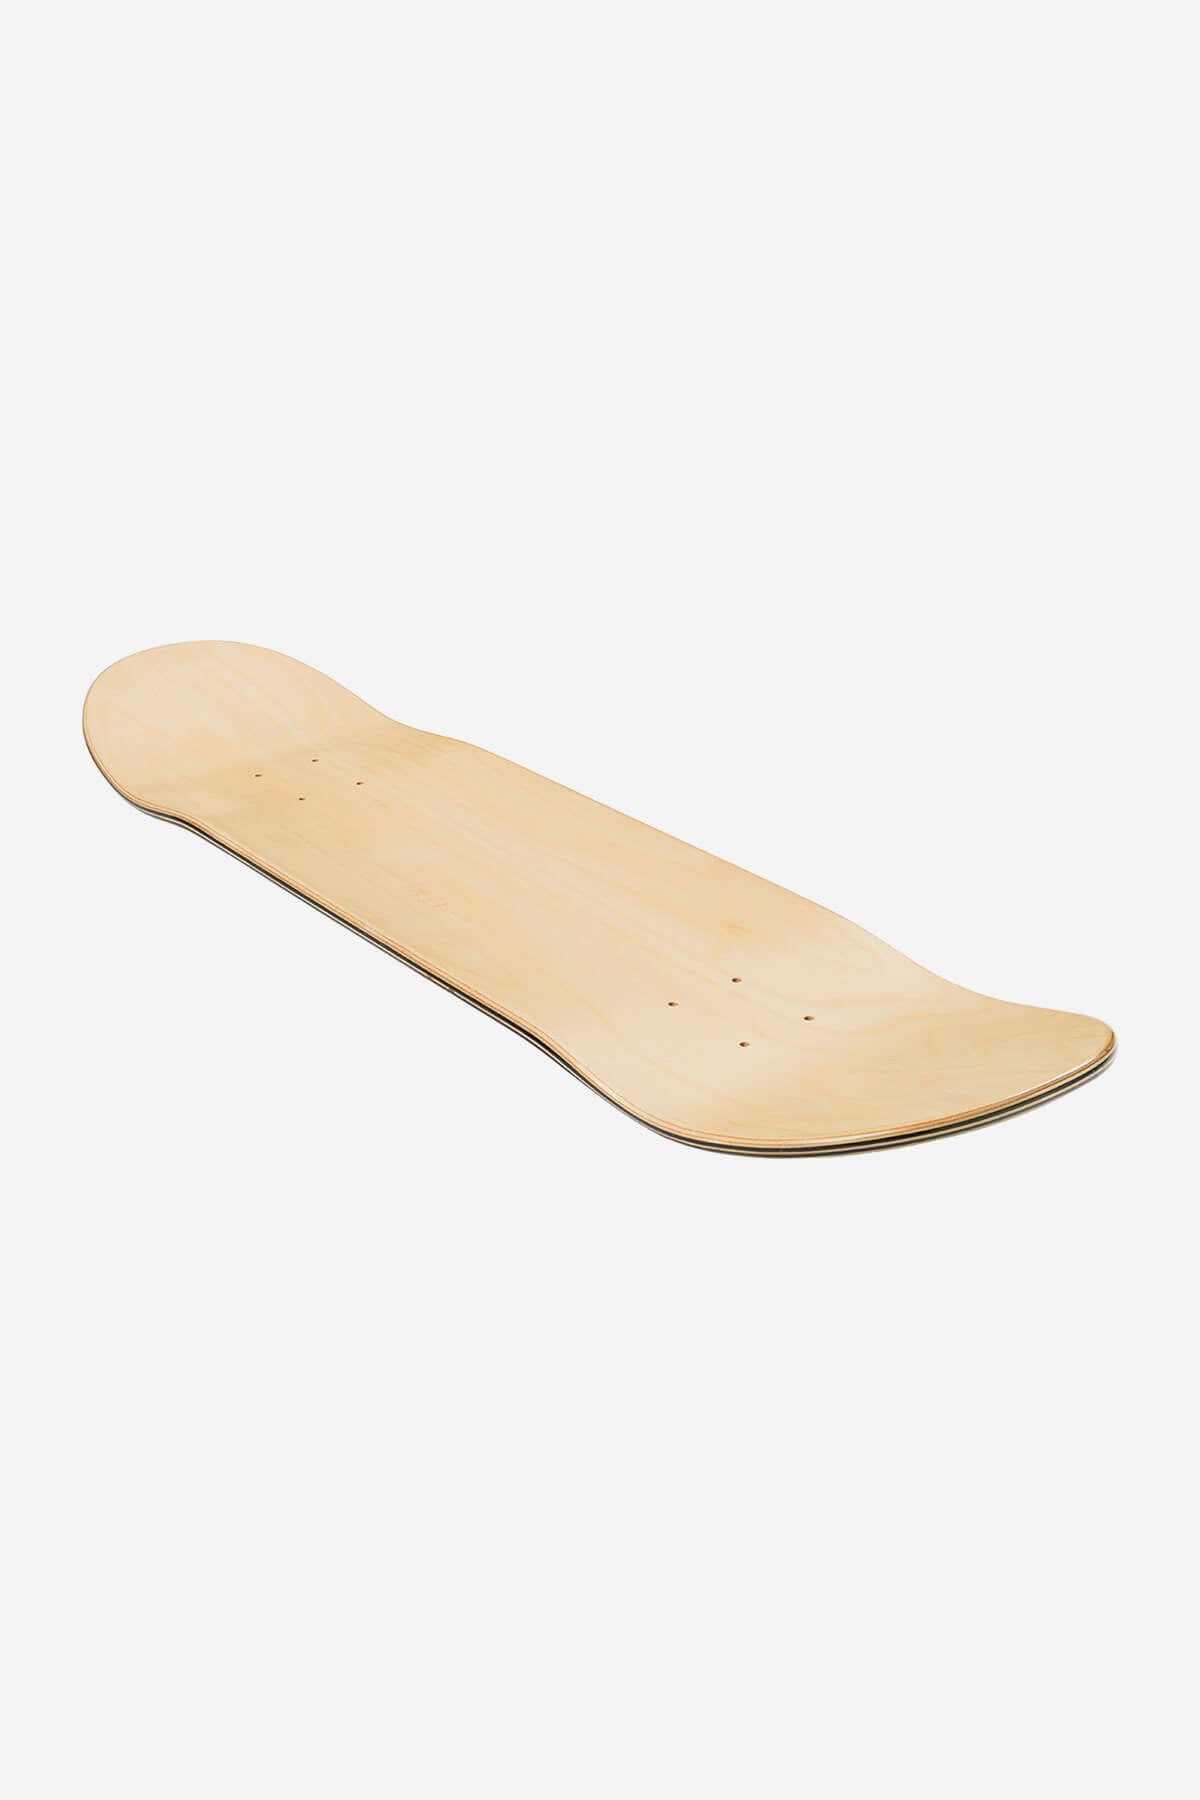 Globe - G1 Lineform - Olive - 8.0" Skateboard Deck